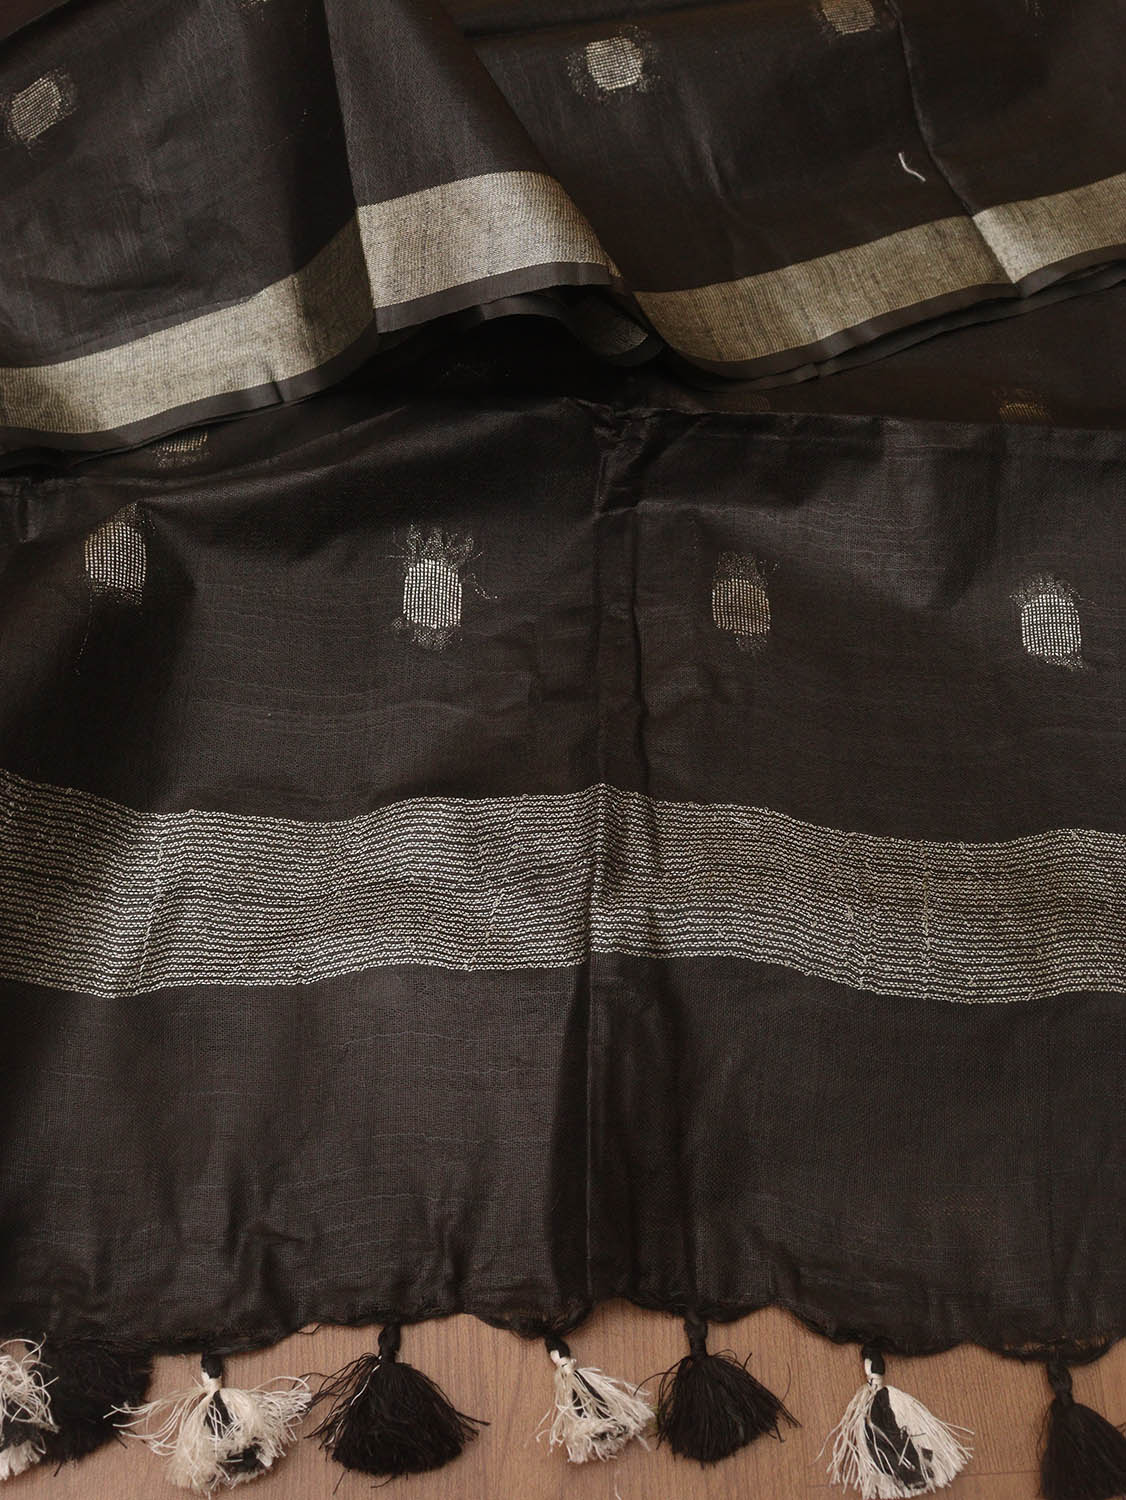 Black Bhagalpur Handloom Linen Cotton Dupatta - Luxurion World